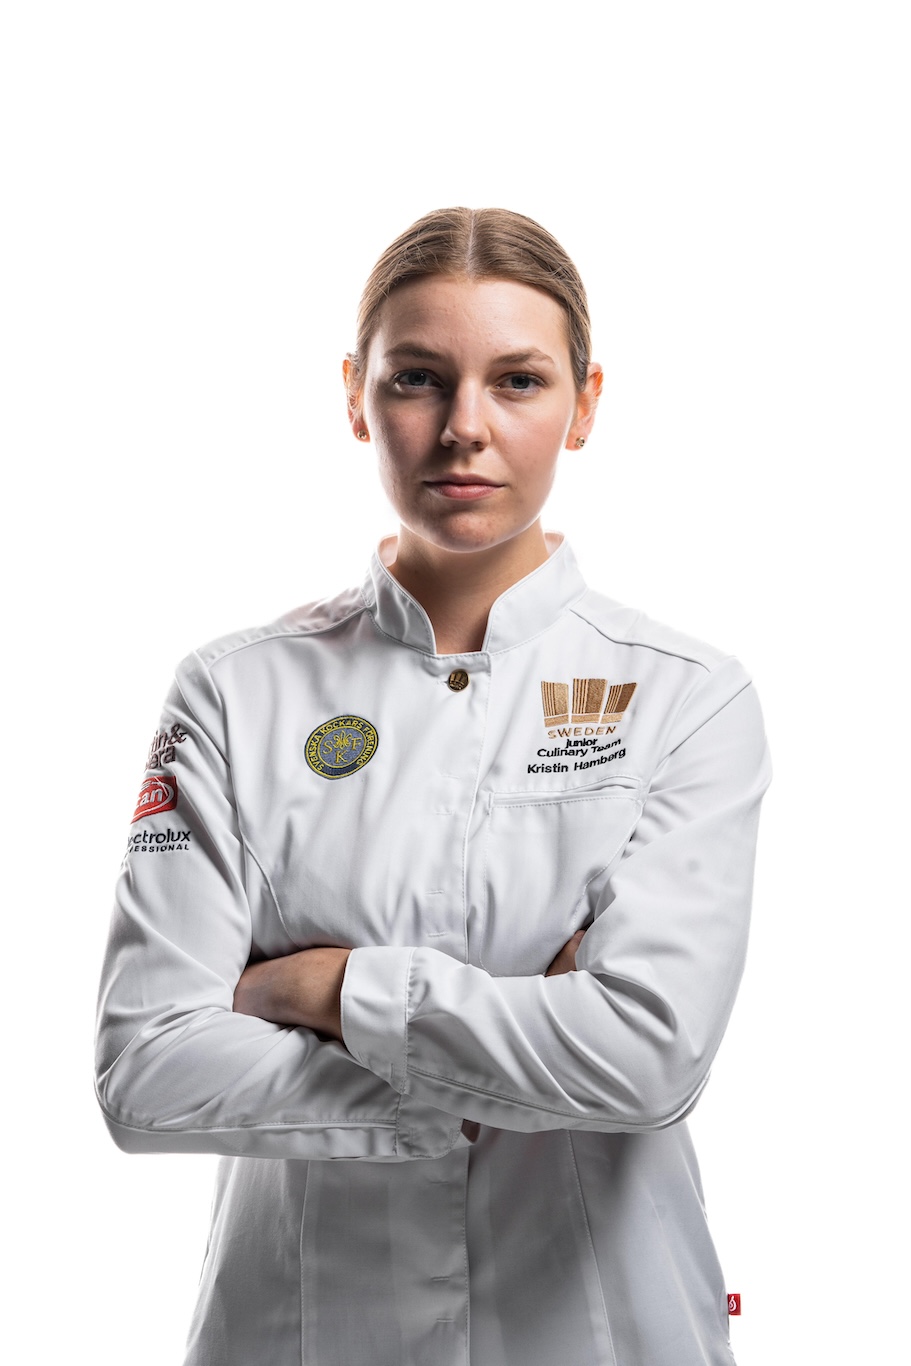 Kristin Hambergs reise fra amatørbaker til kulinarisk OL-gullvinner 7